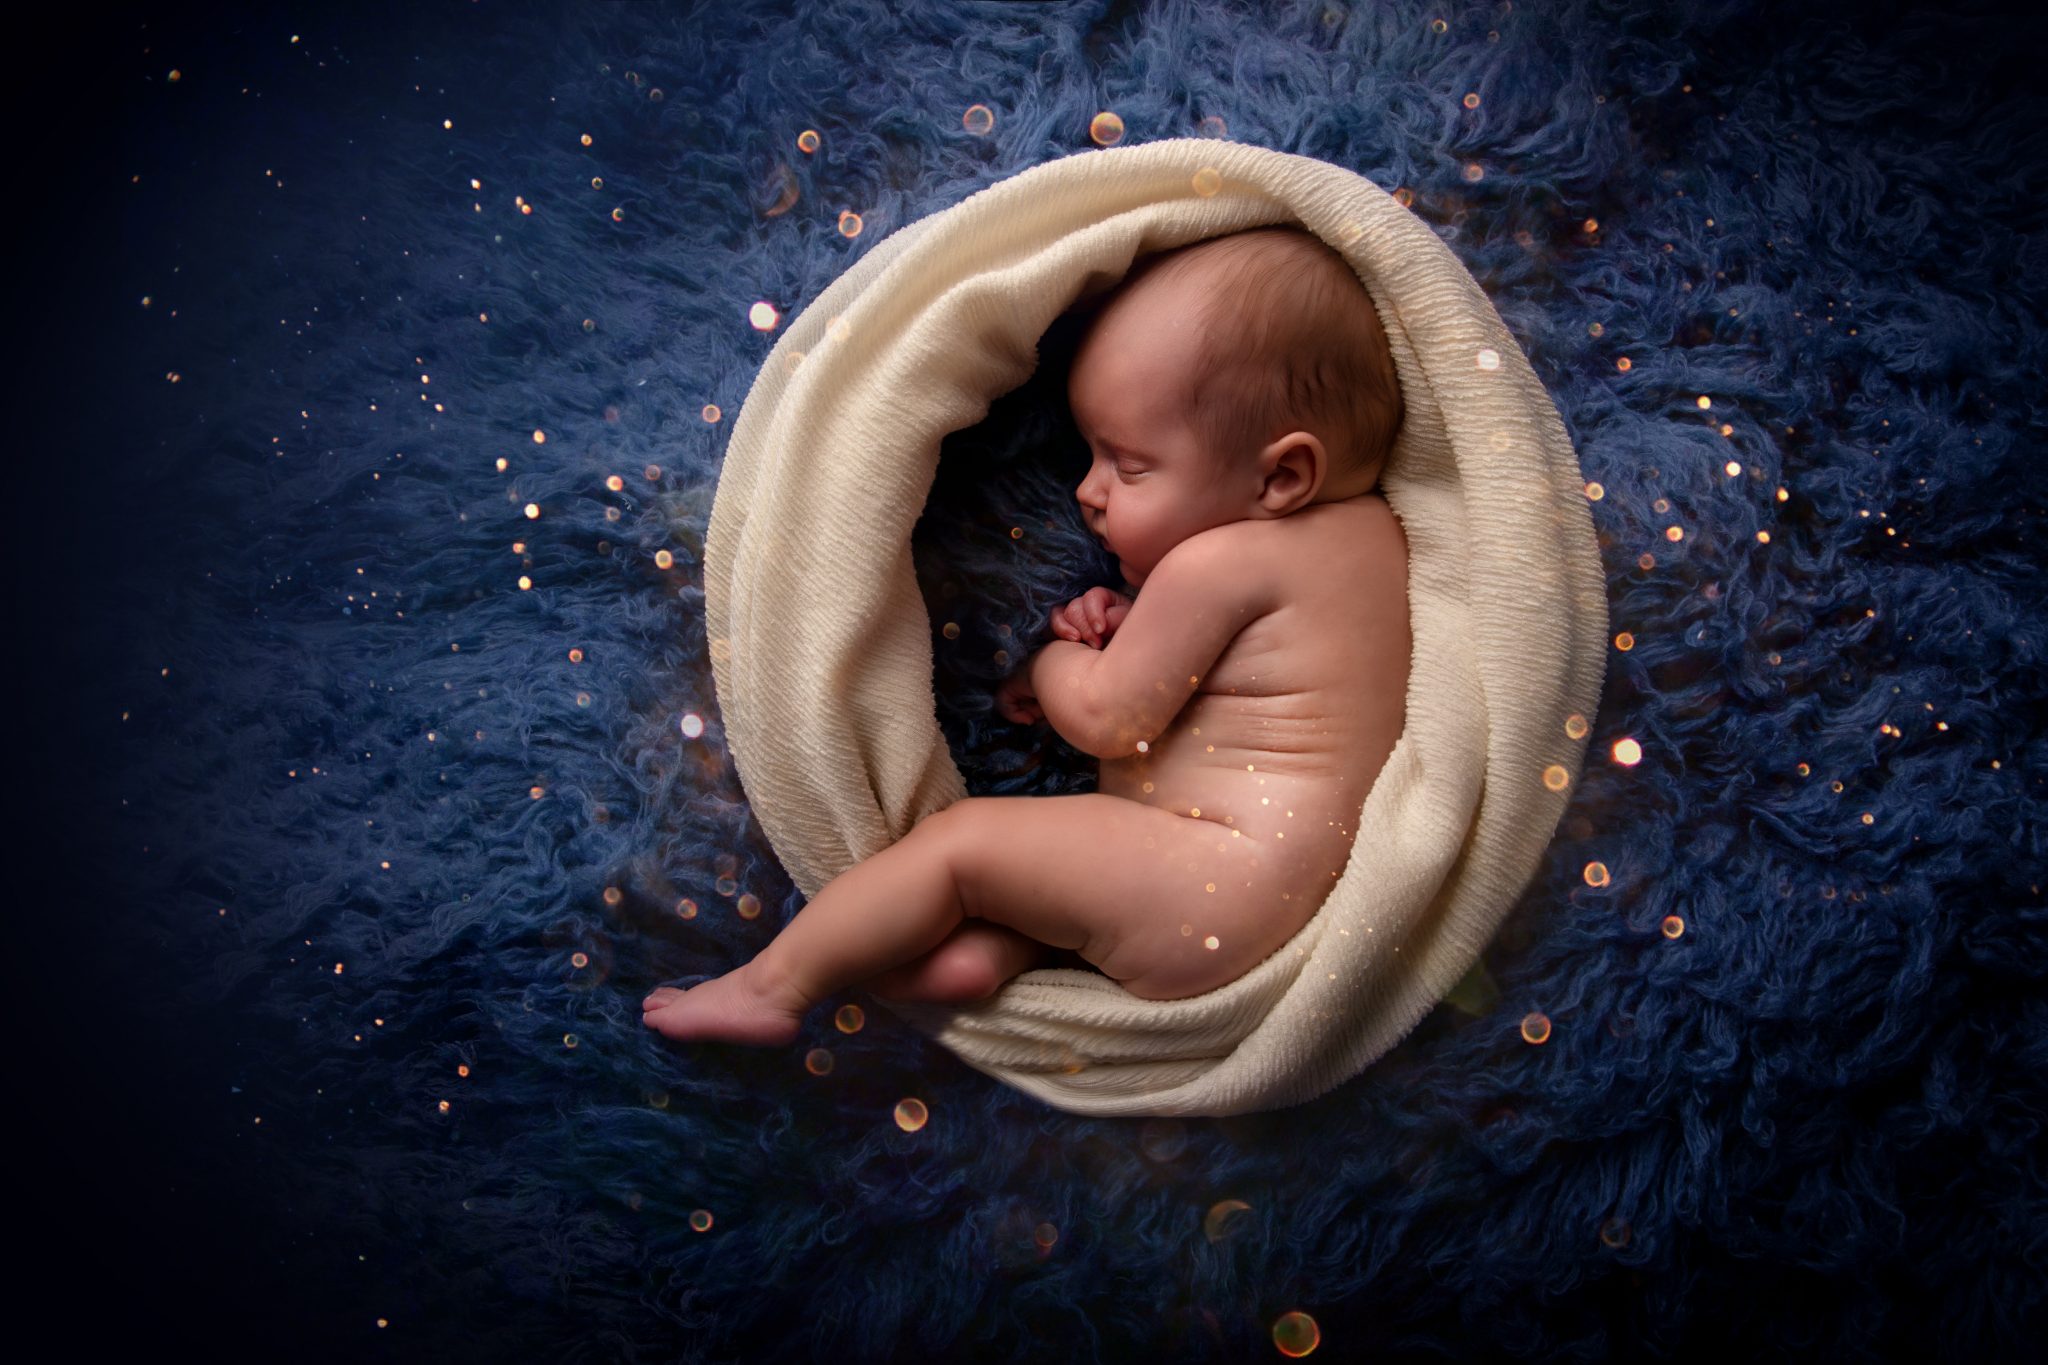 Photographe de bébé, artistique de nouveau né Emeline Photo